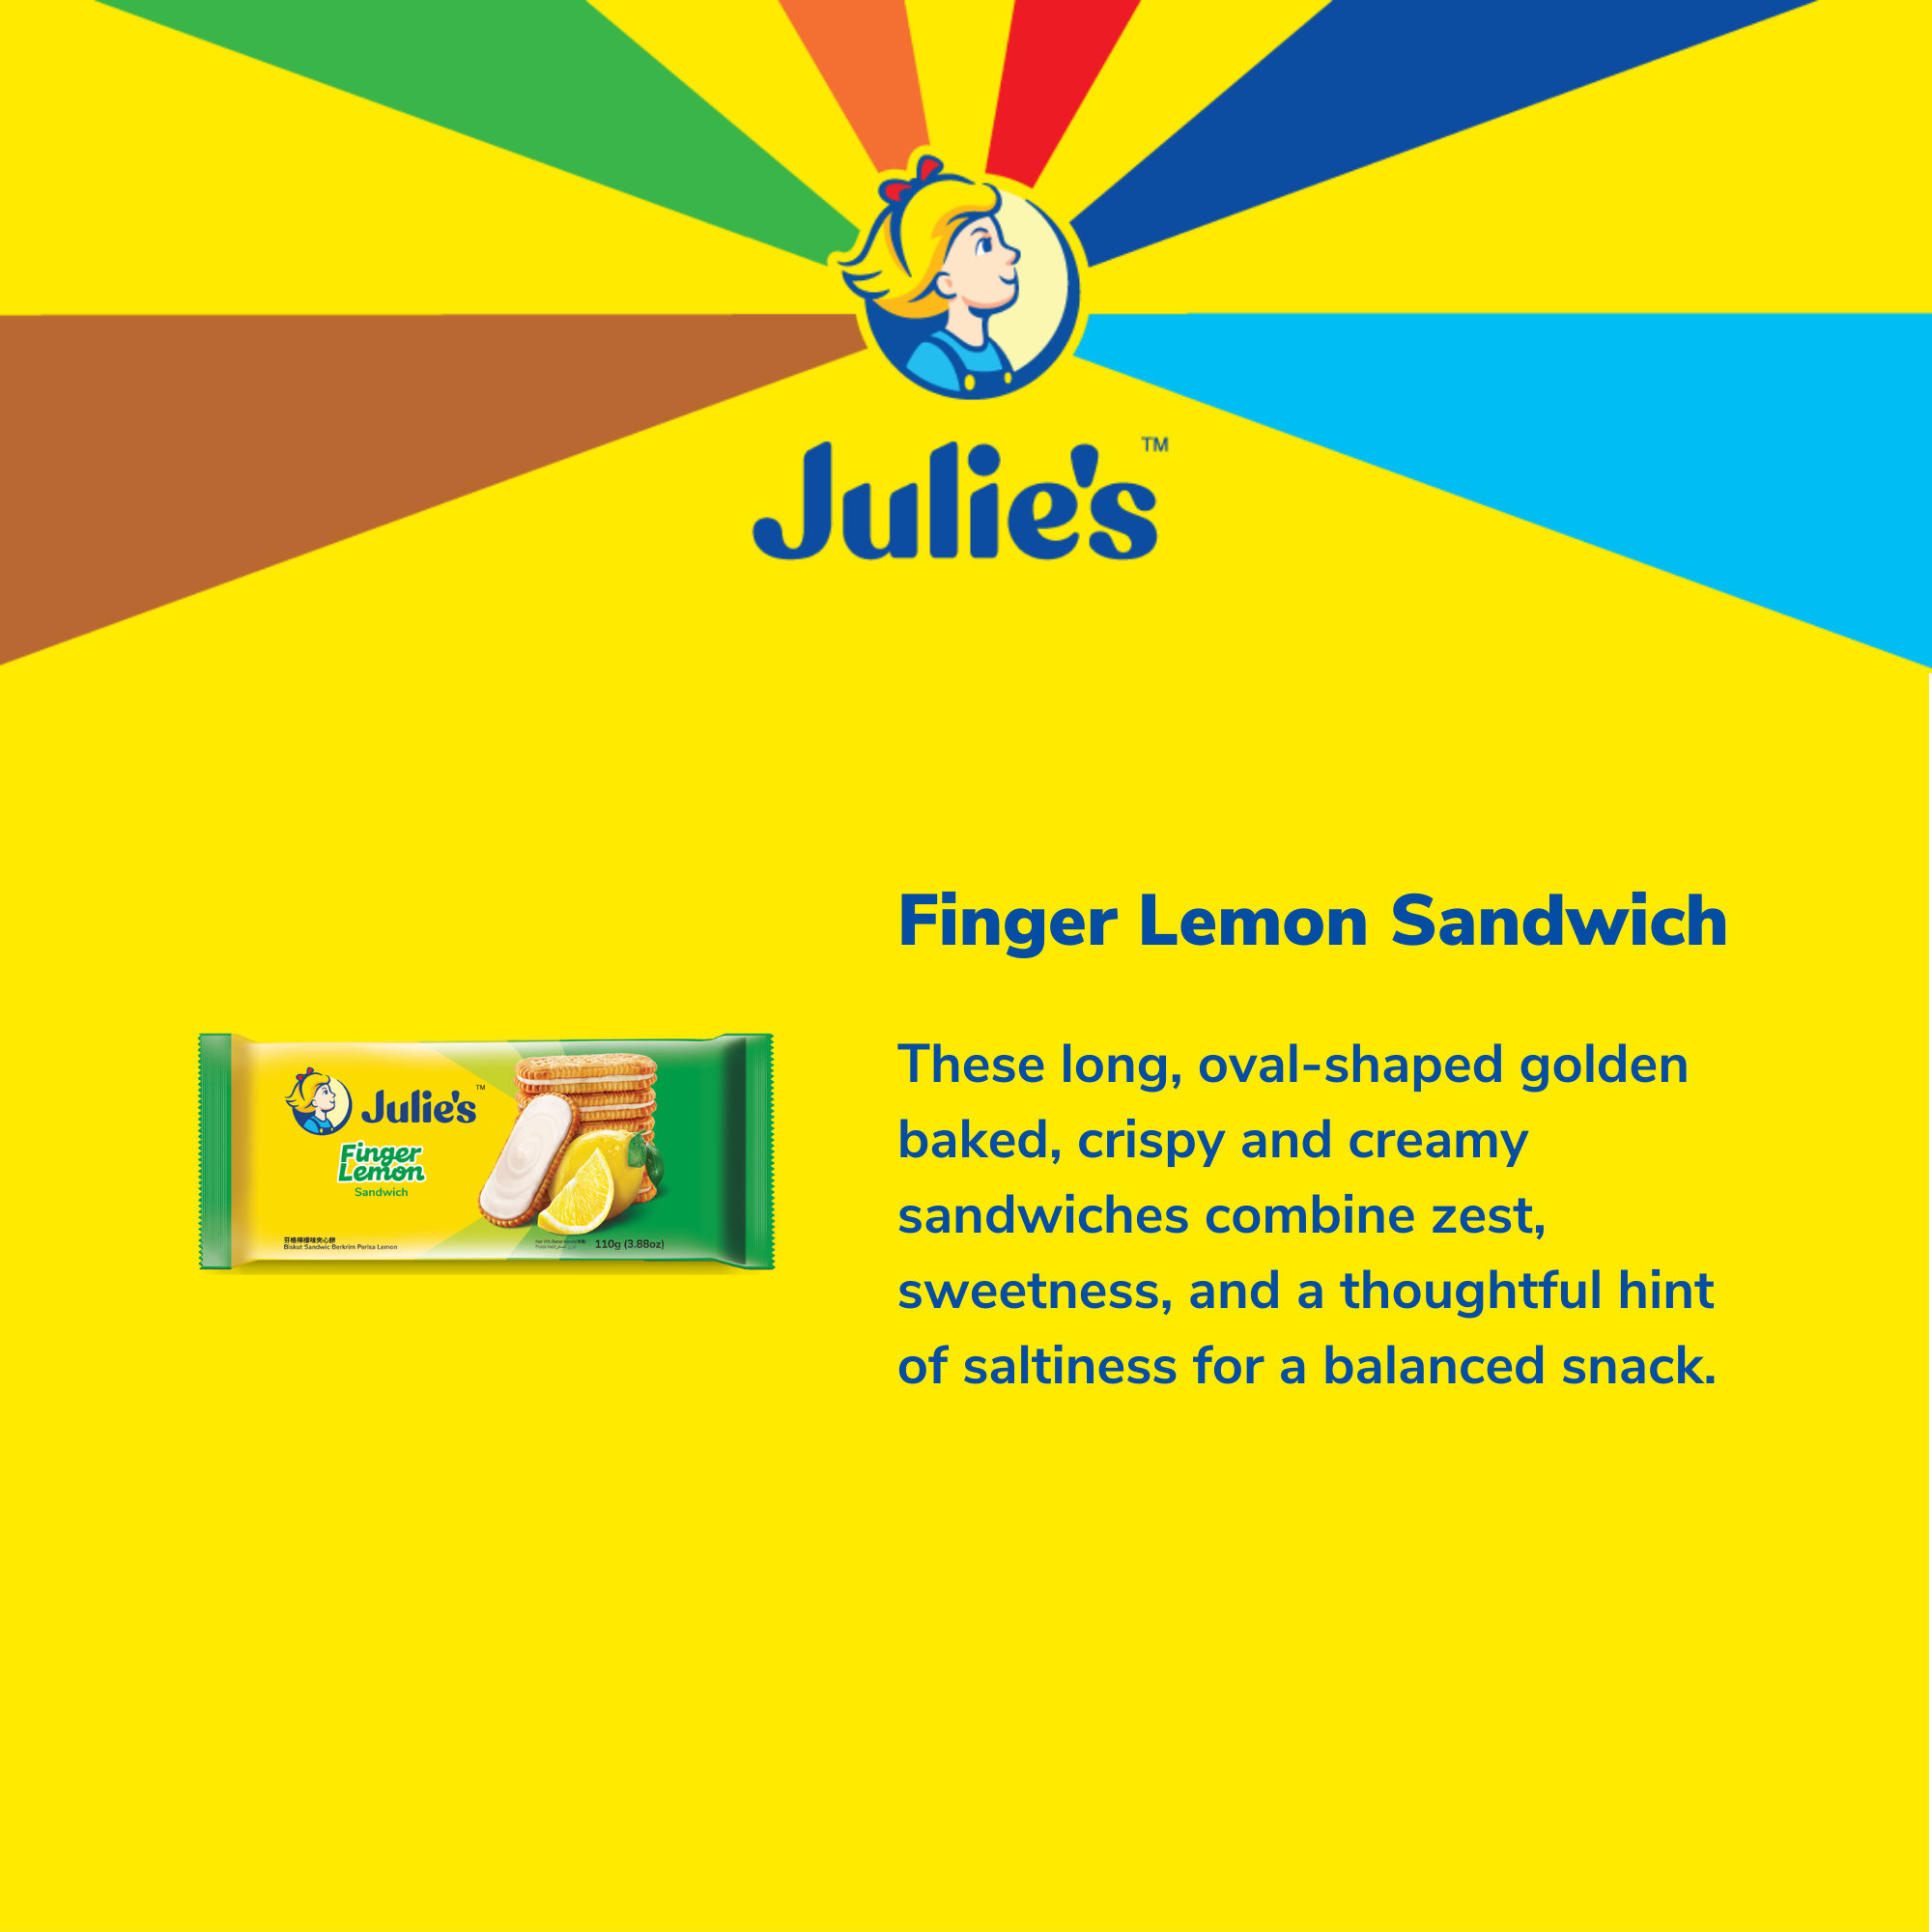 Julie's Finger Lemon Sandwich 110g x 6 packs